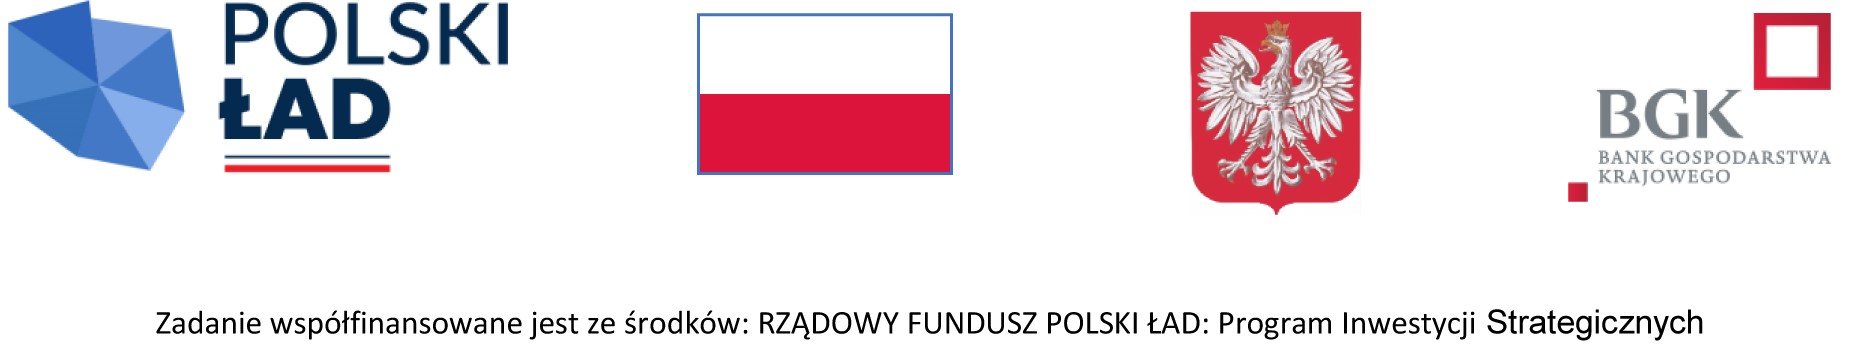 strona_bienkowice-_polski_lad-1_kopia